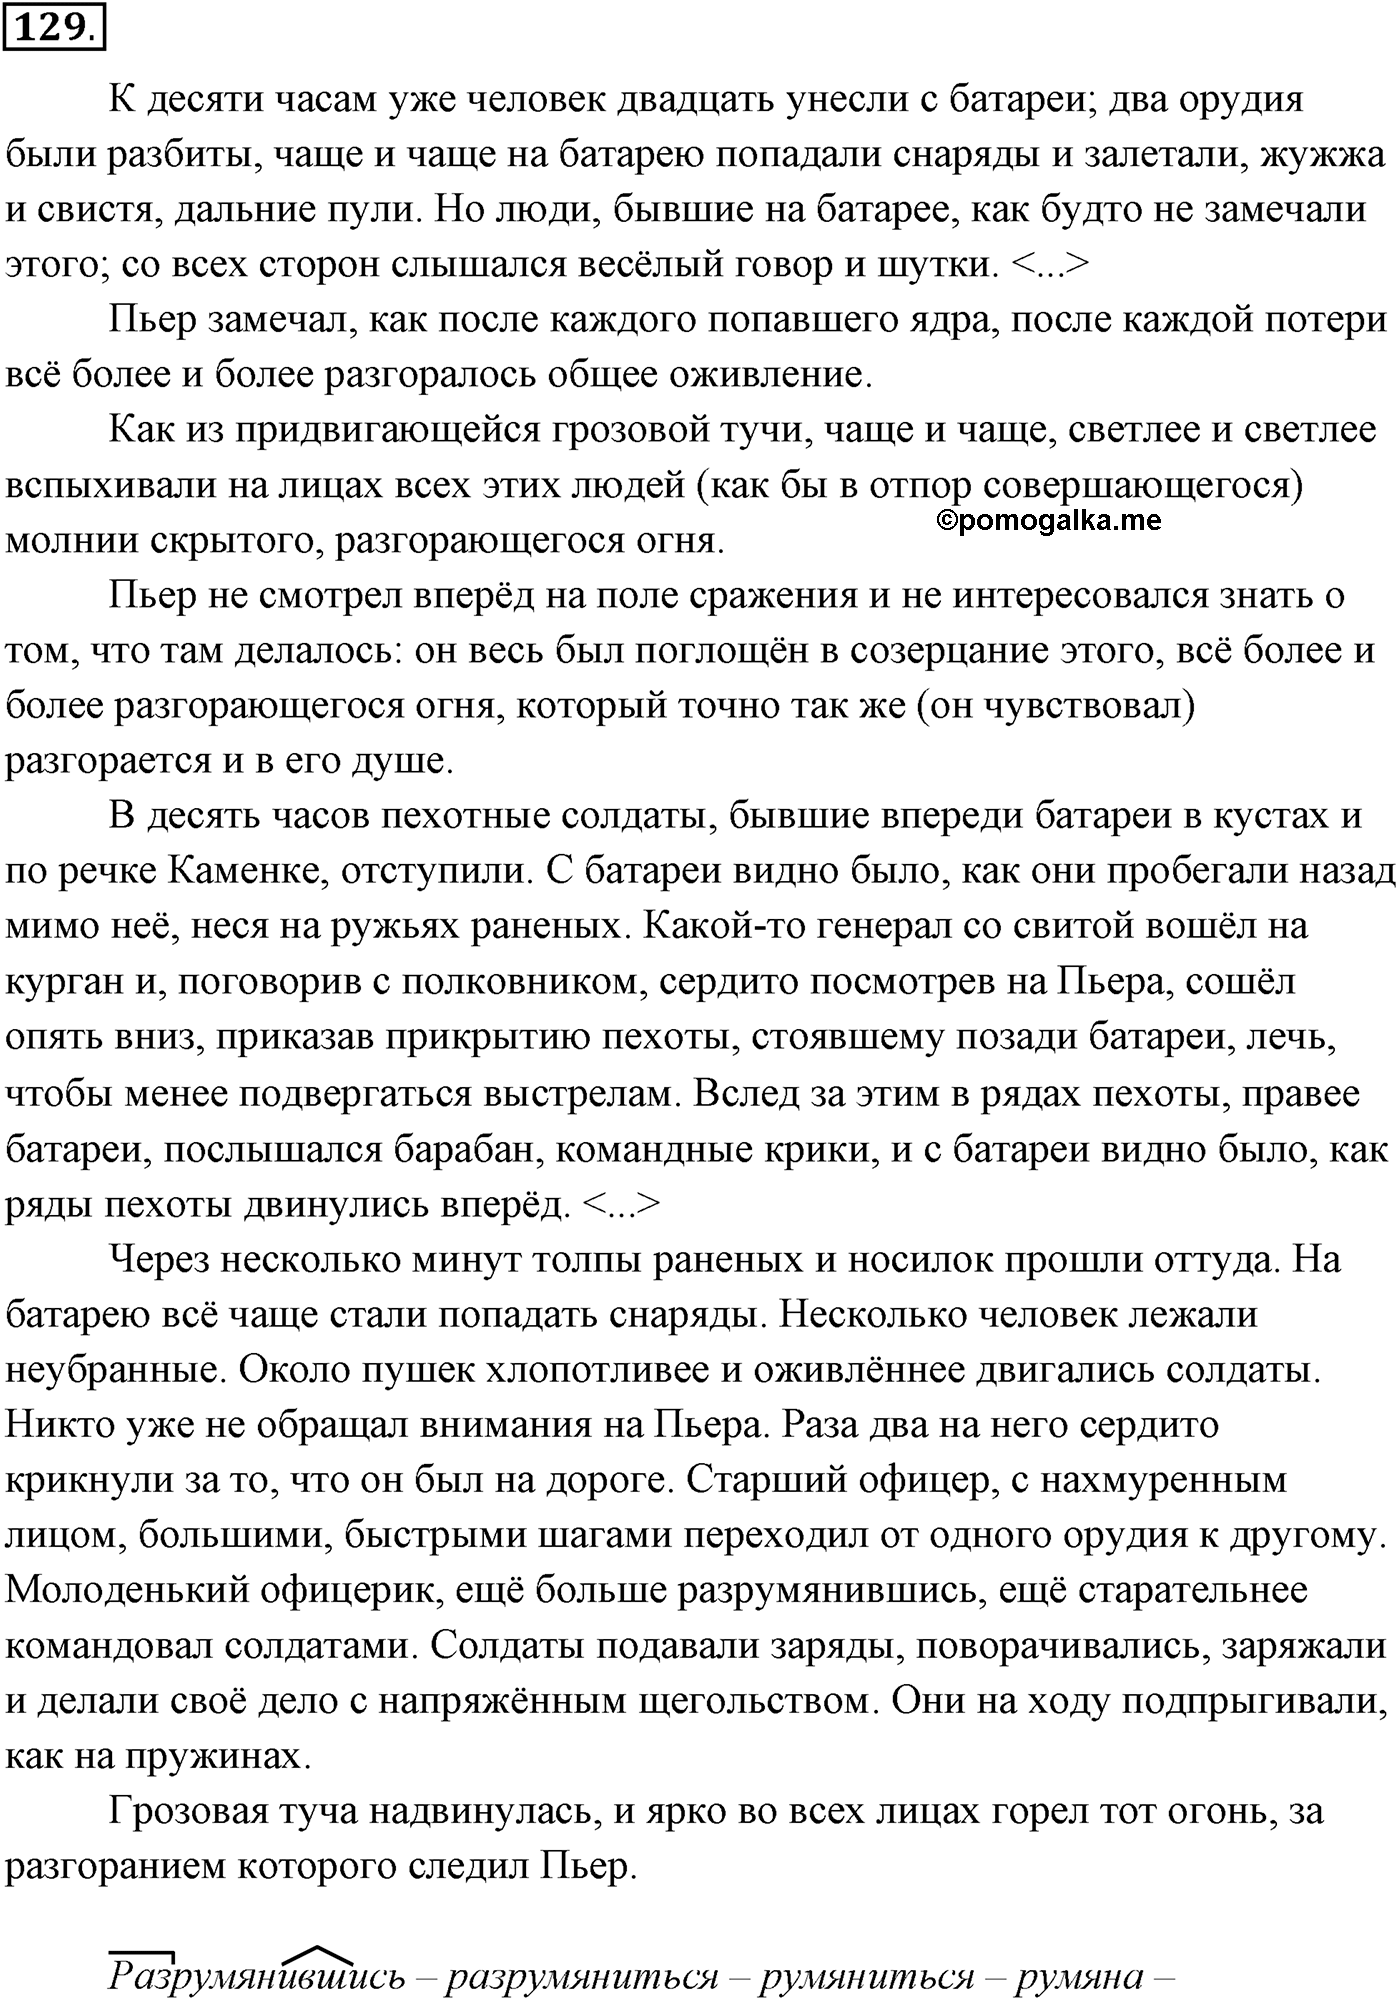 упражнение №129 русский язык 10-11 класс Власенков